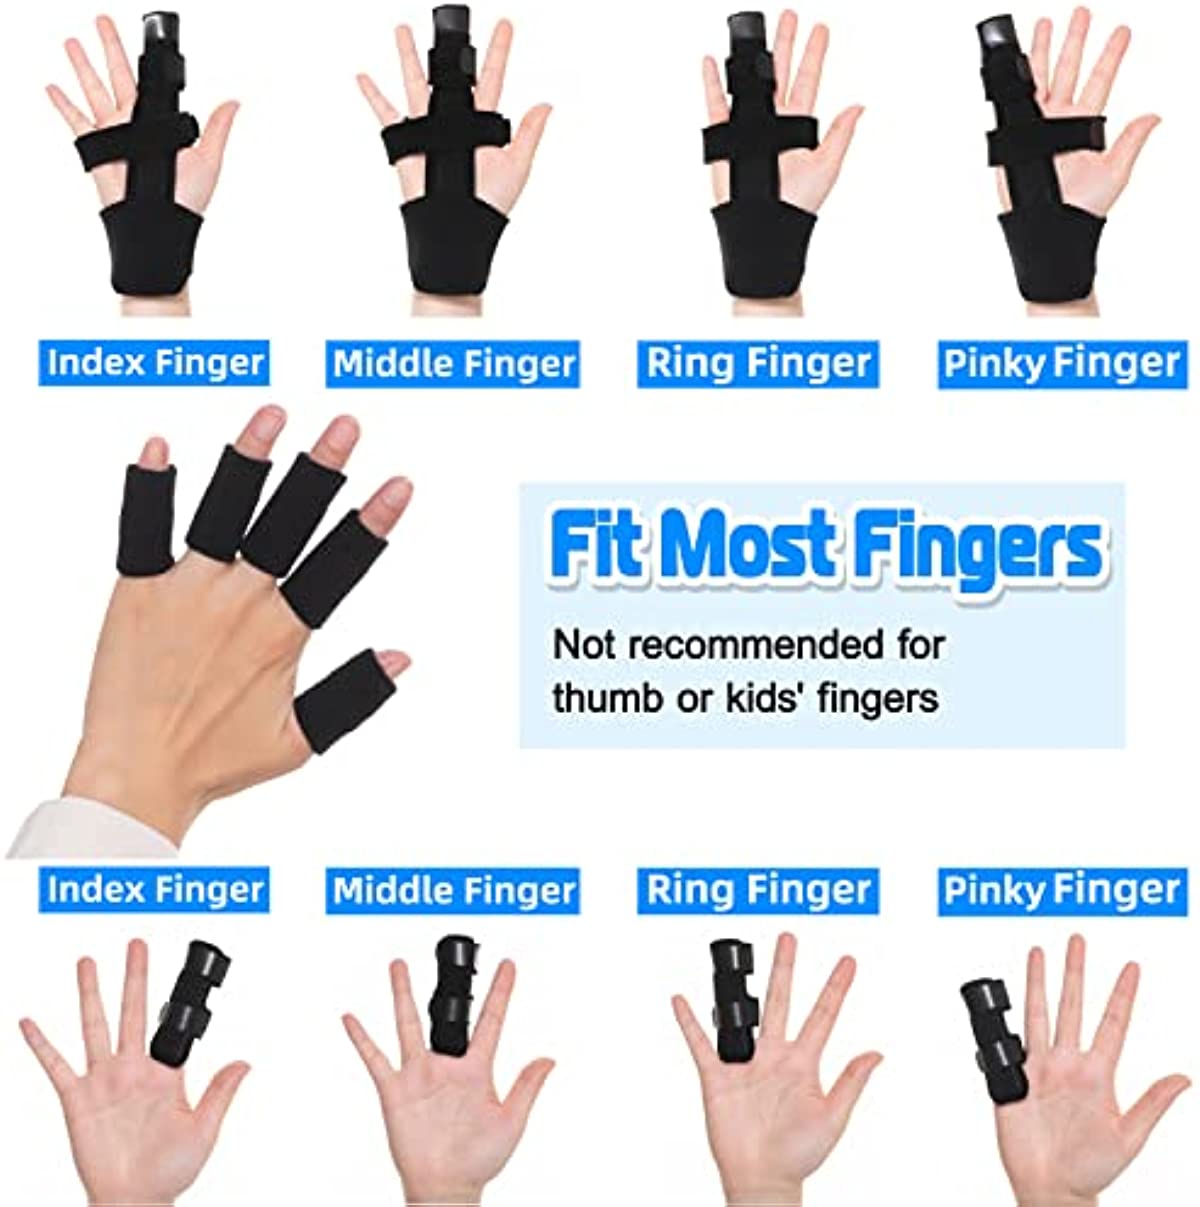 Fanwer Trigger Finger Splint(5PCS), 1 Finger Extension Splint plus 2 Finger Brace with 2 Nylon Sleeves for Straightening, Broken Finger, Mallet Finger, Arthritis & Tendonitis Pain Relief and Support